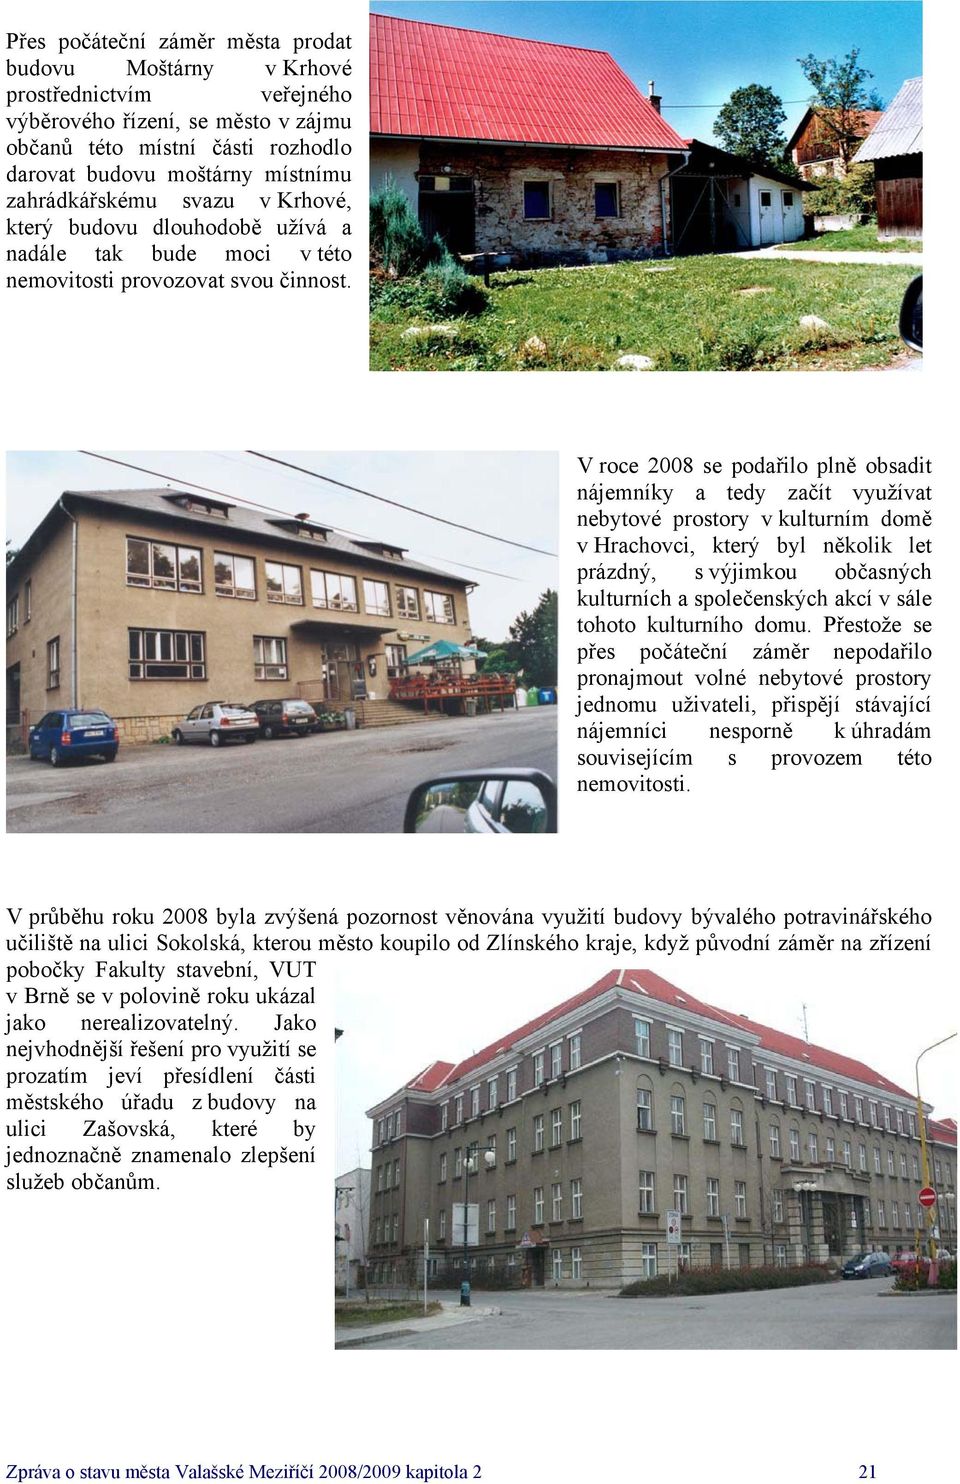 V roce se podařilo plně obsadit nájemníky a tedy začít využívat nebytové prostory v kulturním domě v Hrachovci, který byl několik let prázdný, s výjimkou občasných kulturních a společenských akcí v